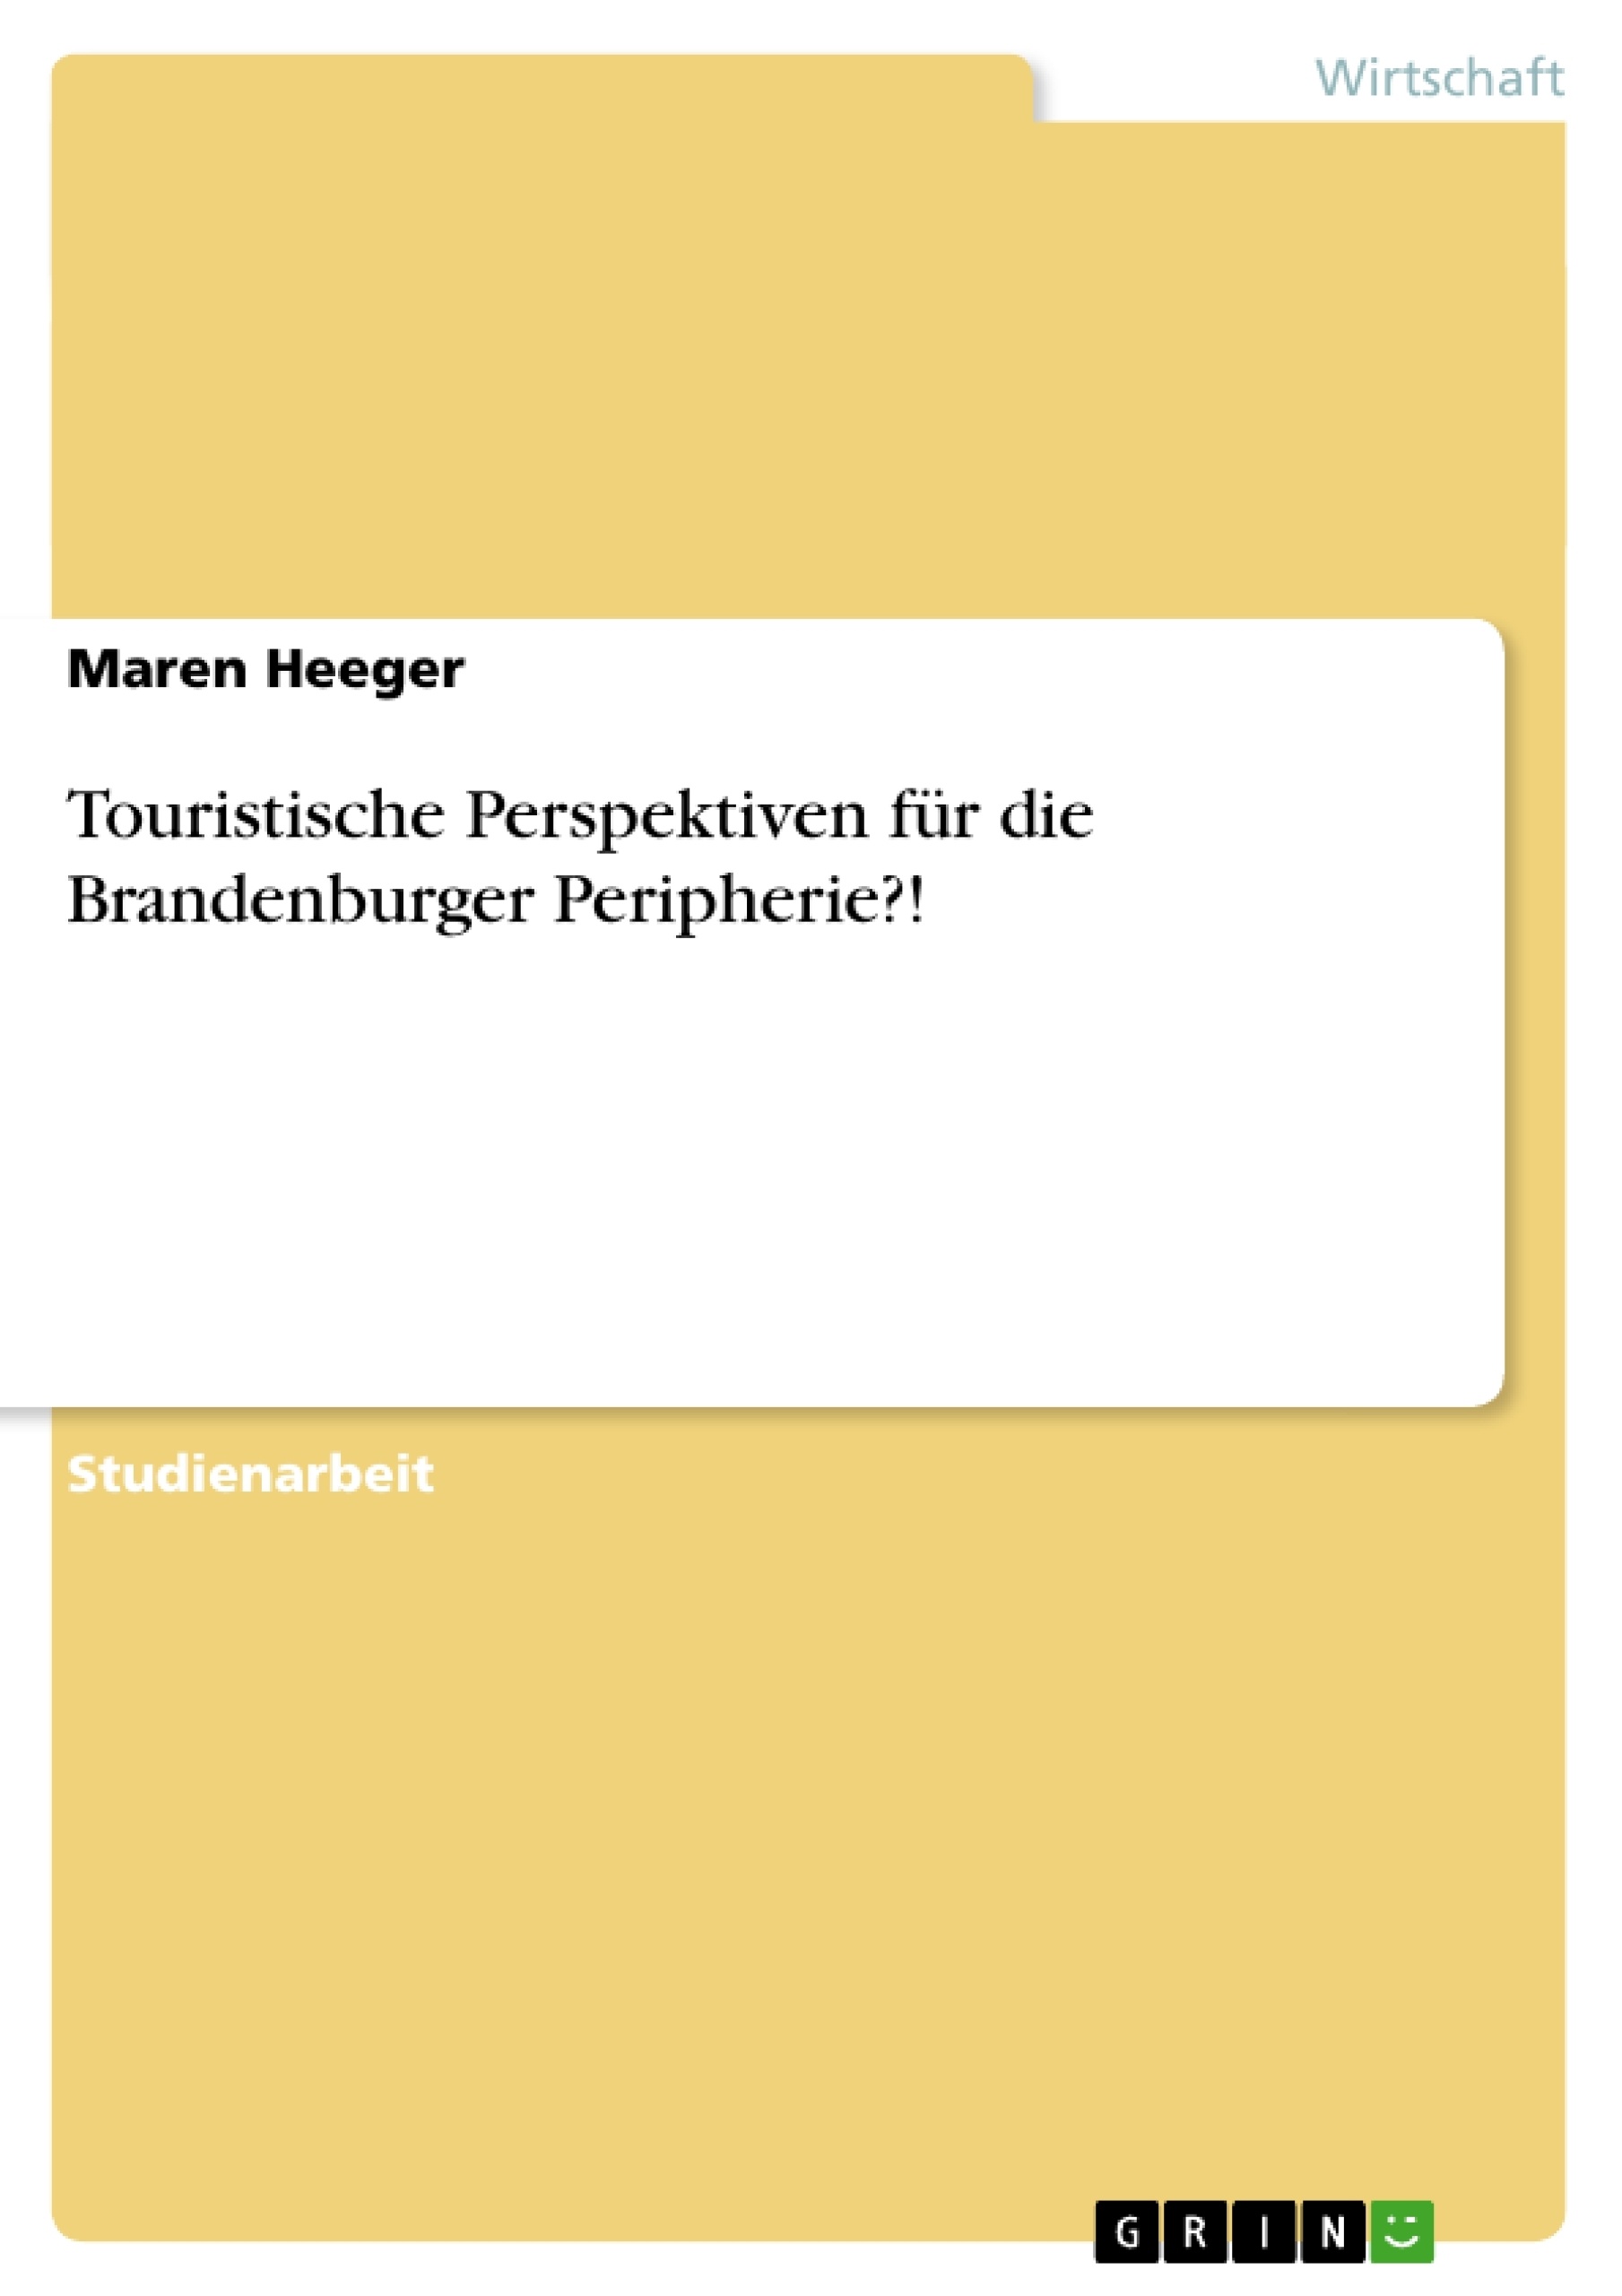 Title: Touristische Perspektiven für die Brandenburger Peripherie?!